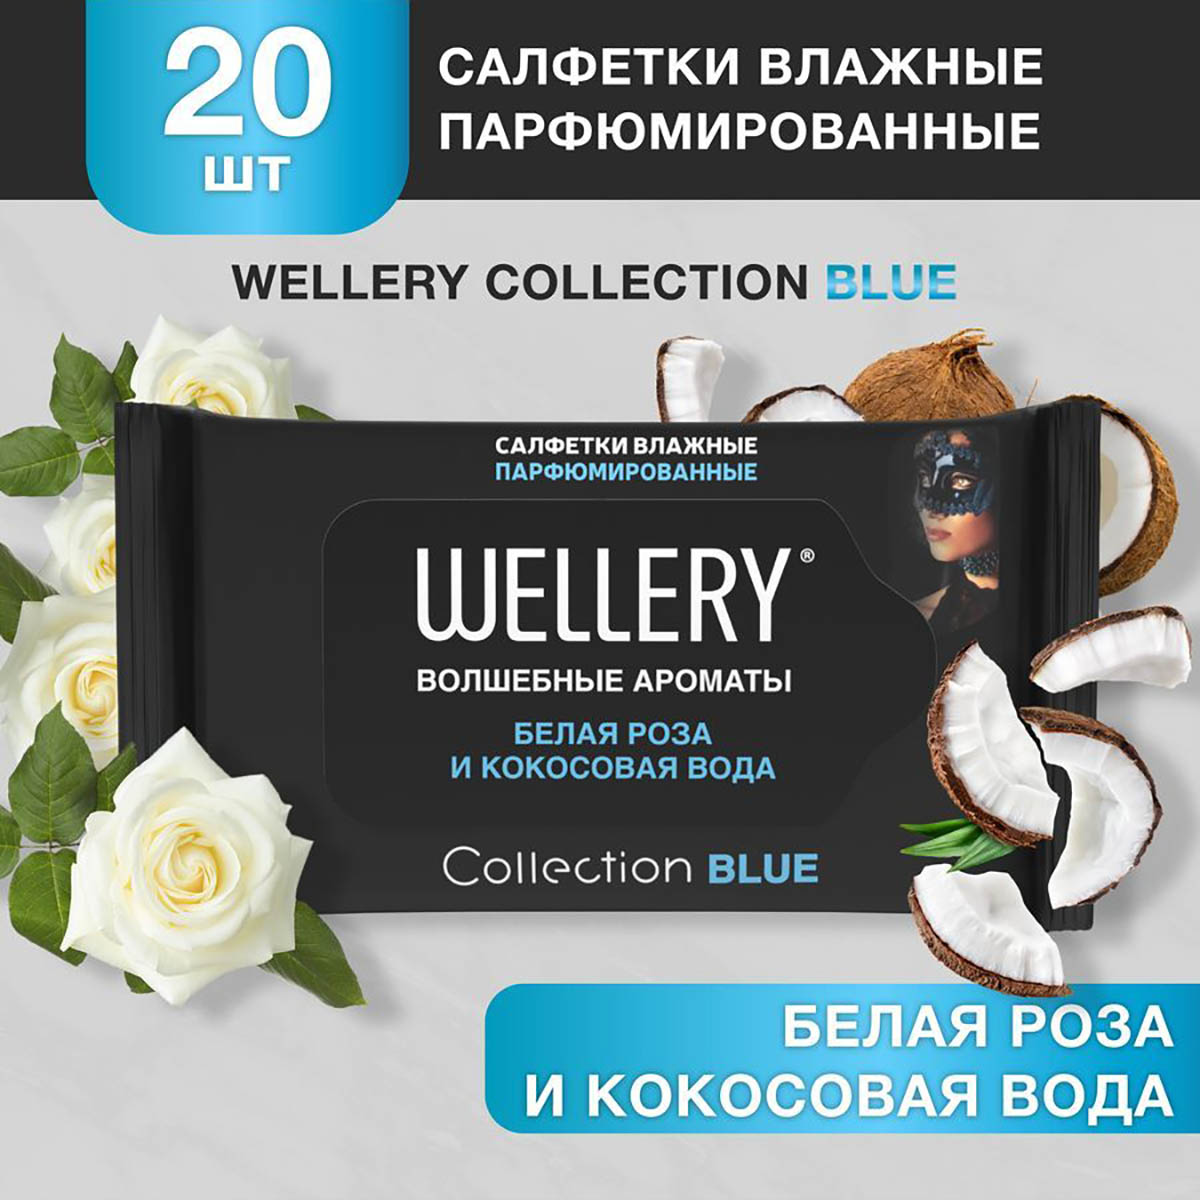 Салфетки влажные Wellery Collection Blue универсальные, белая роза, кокосовая вода 20 шт благовония tulasi 20 аромапалочек белая роза